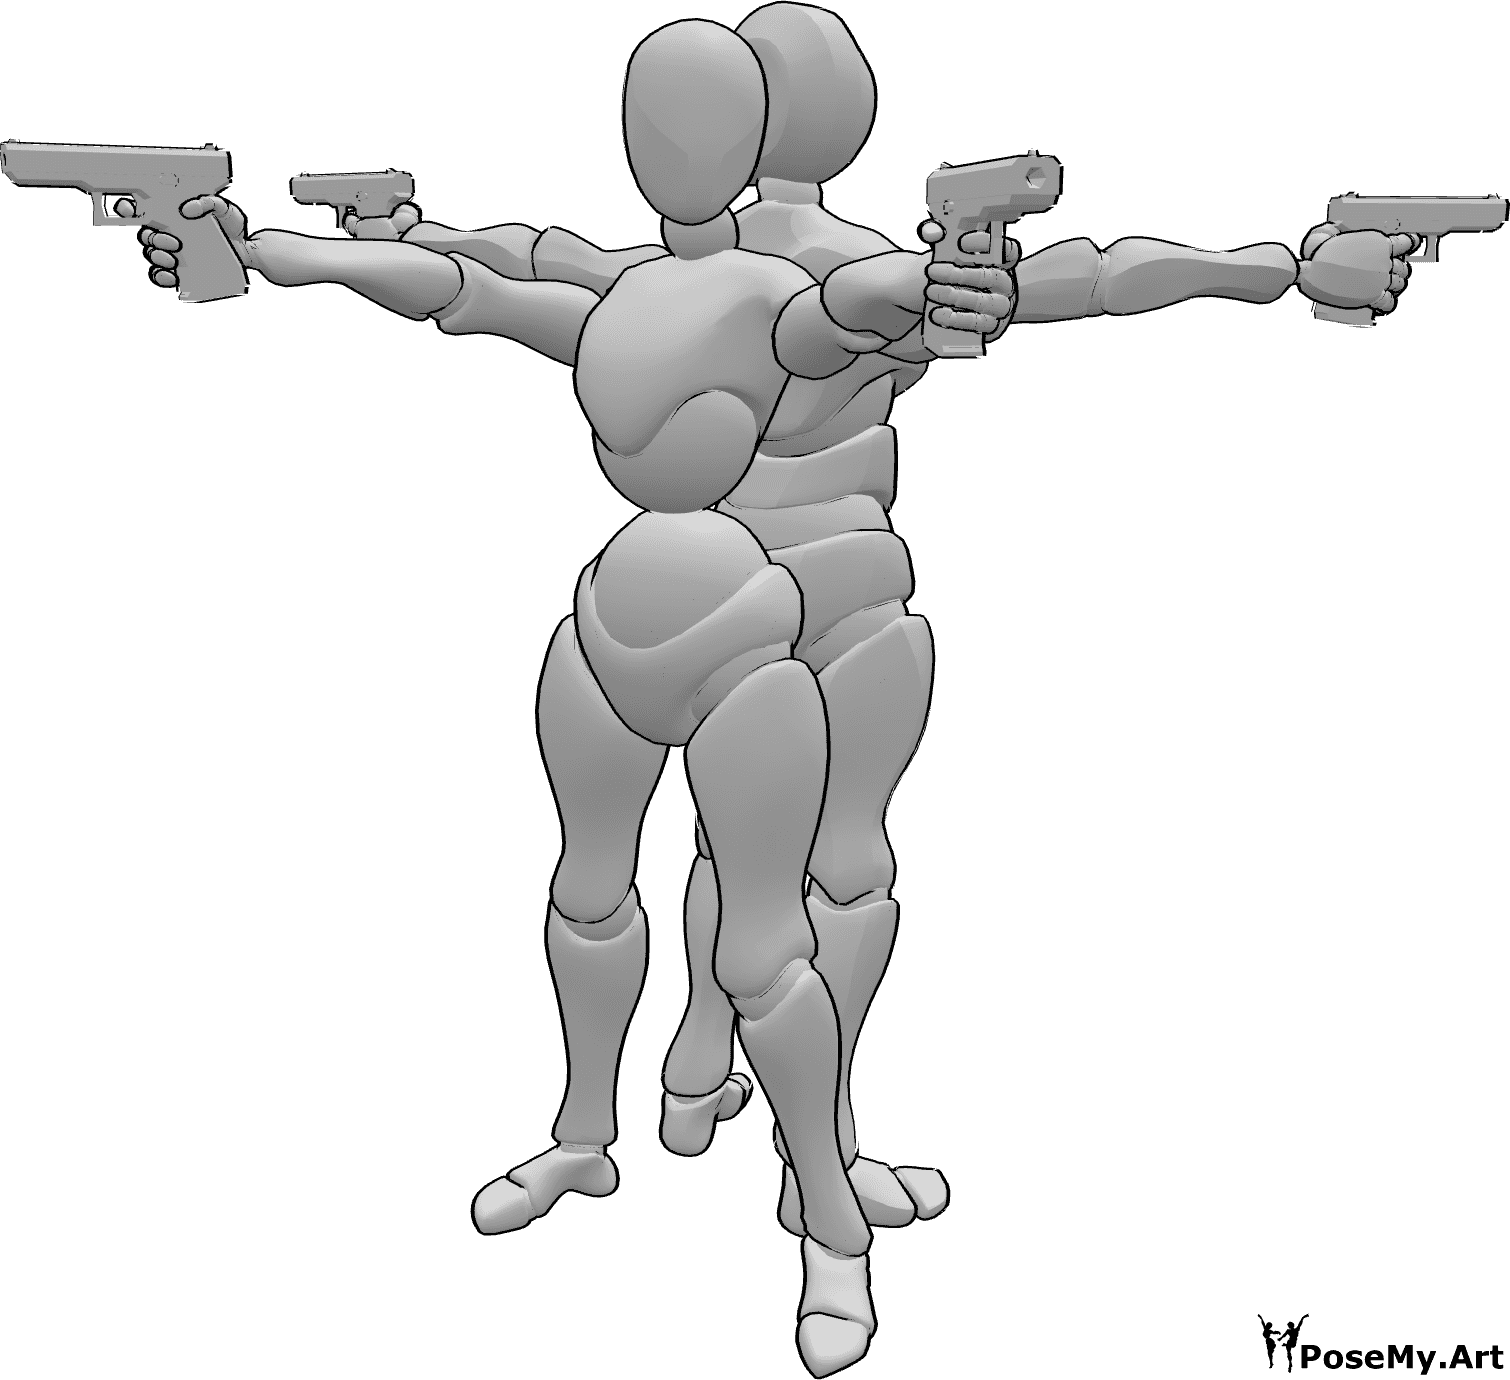 Posen-Referenz- Weibliche männliche Gewehre posieren - Weiblich und männlich Rücken an Rücken mit Pistolen posieren